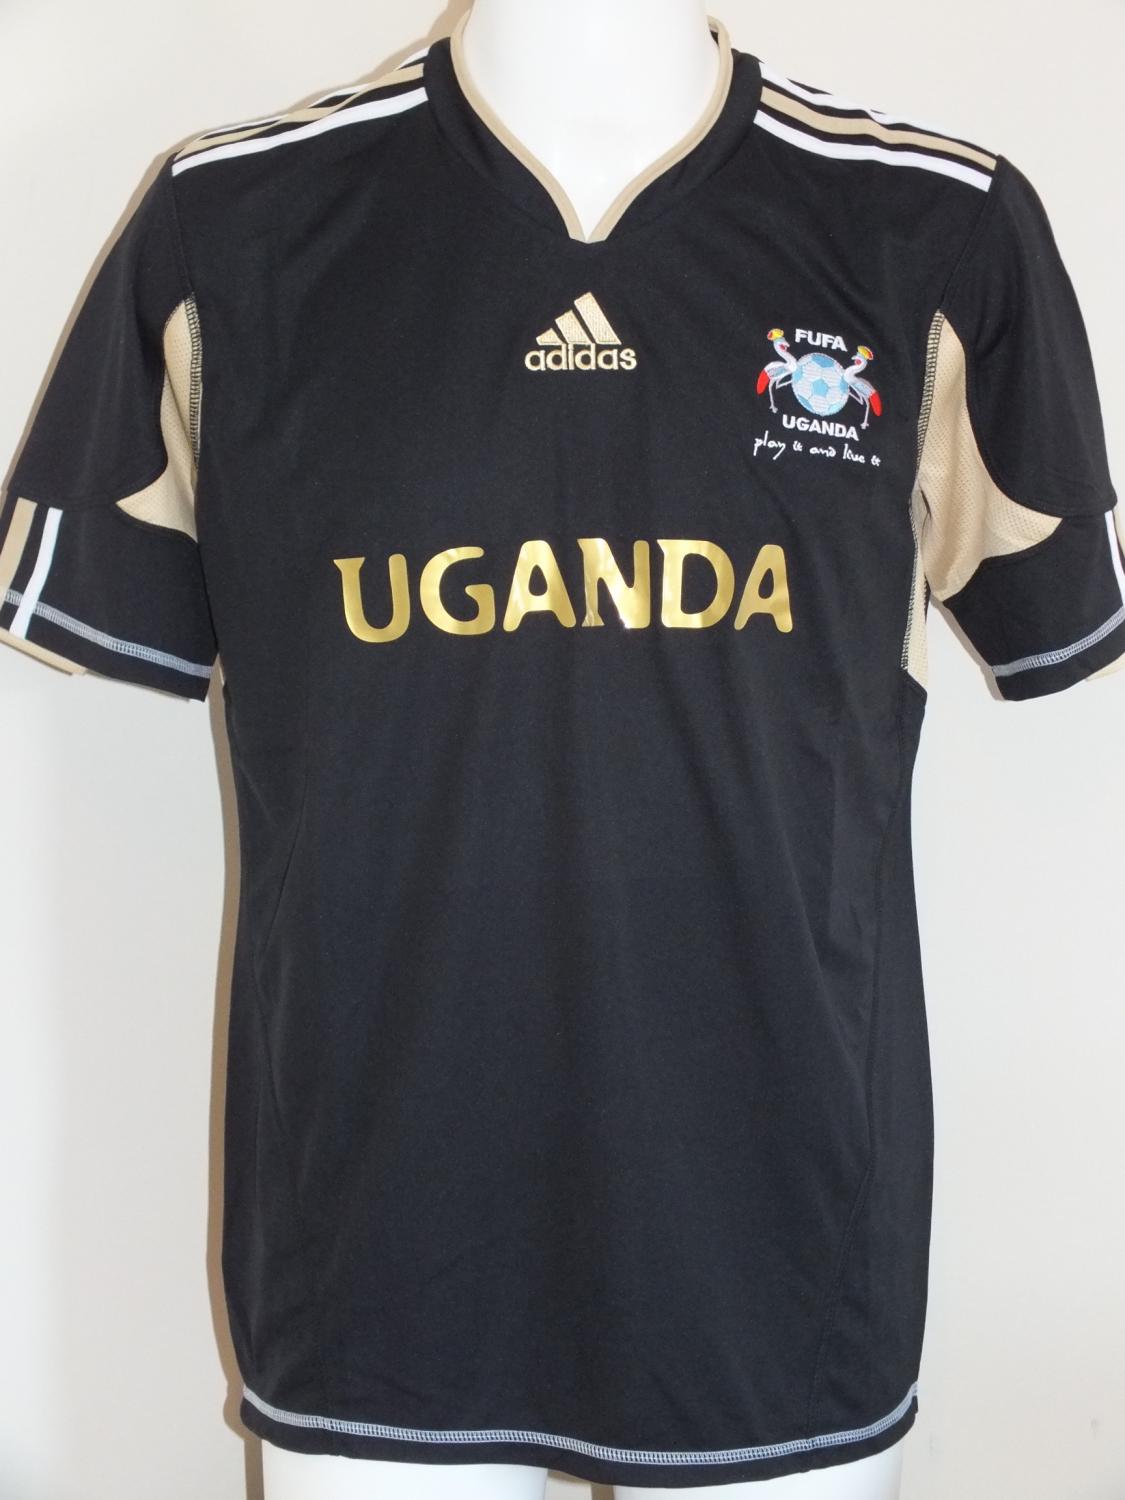 maillot ouganda gardien 2012 pas cher